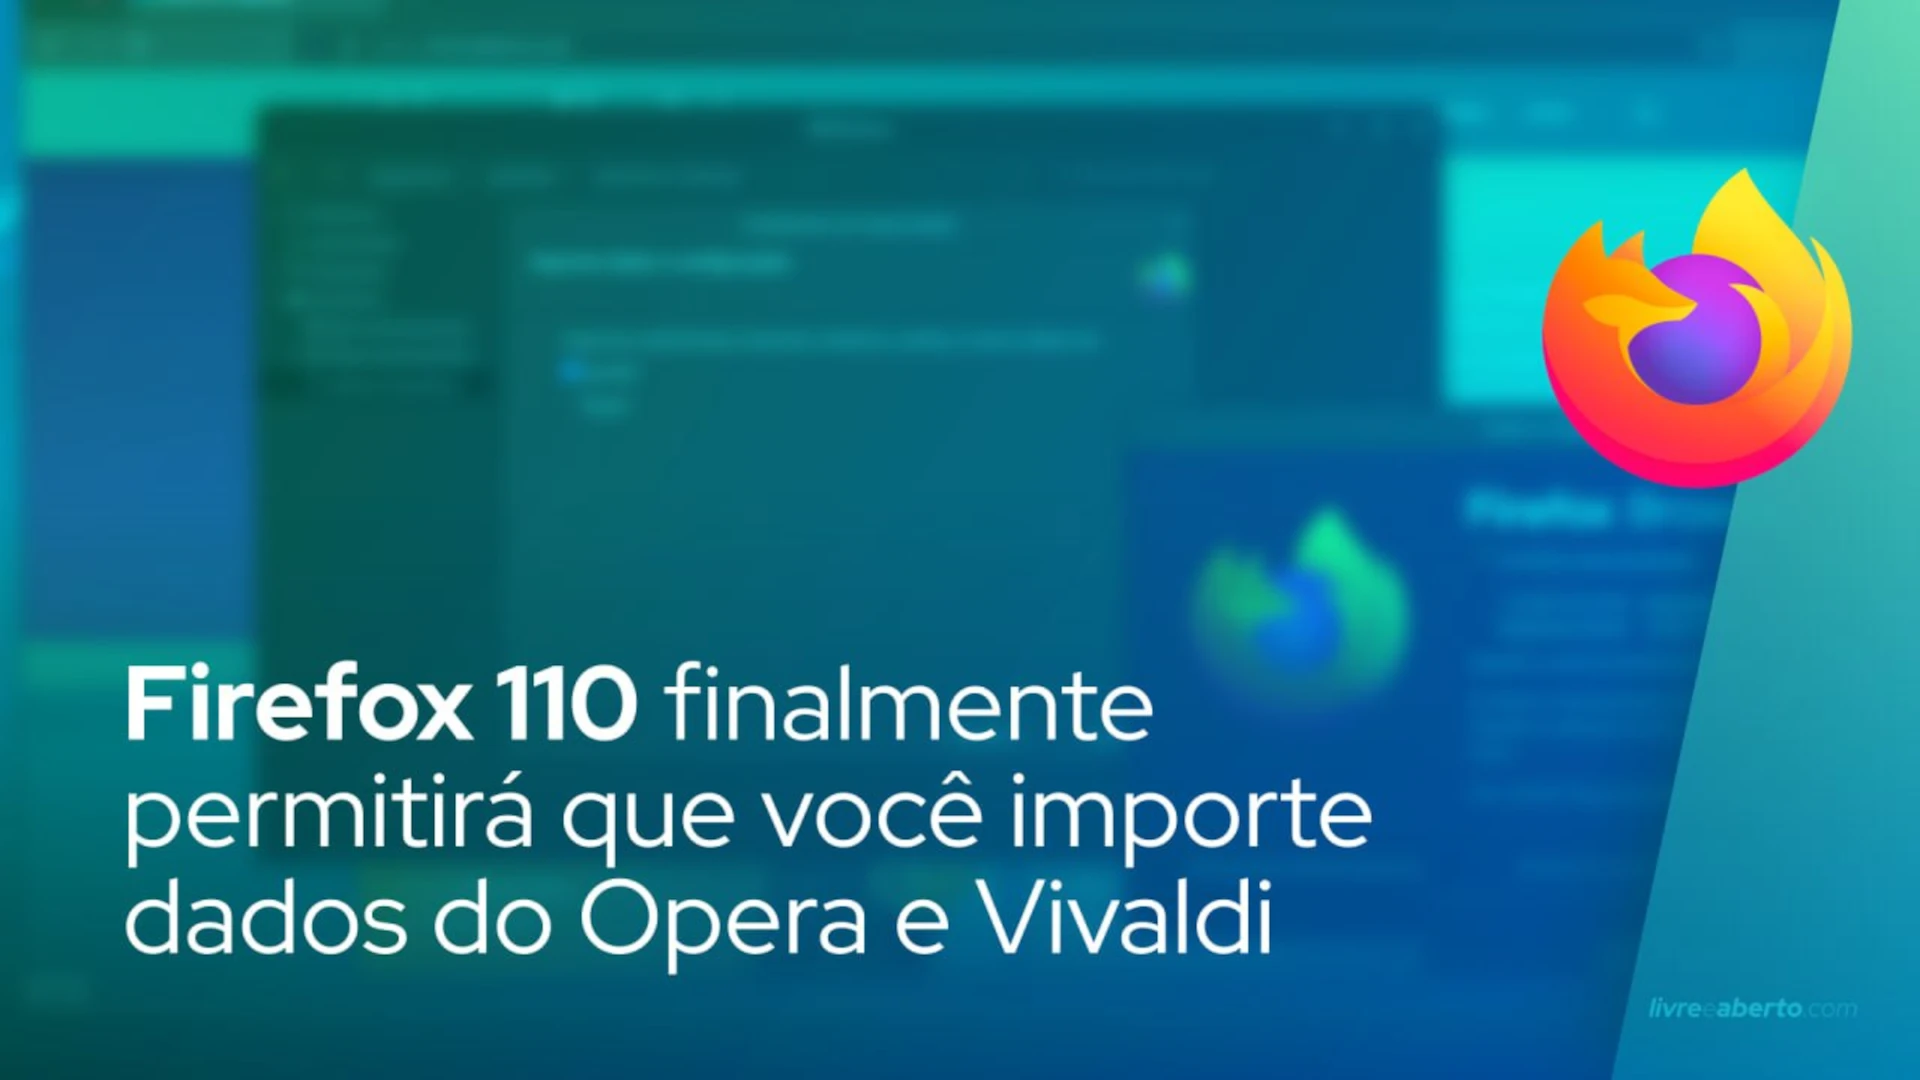 Firefox 110 finalmente permitirá que você importe dados do Opera e Vivaldi